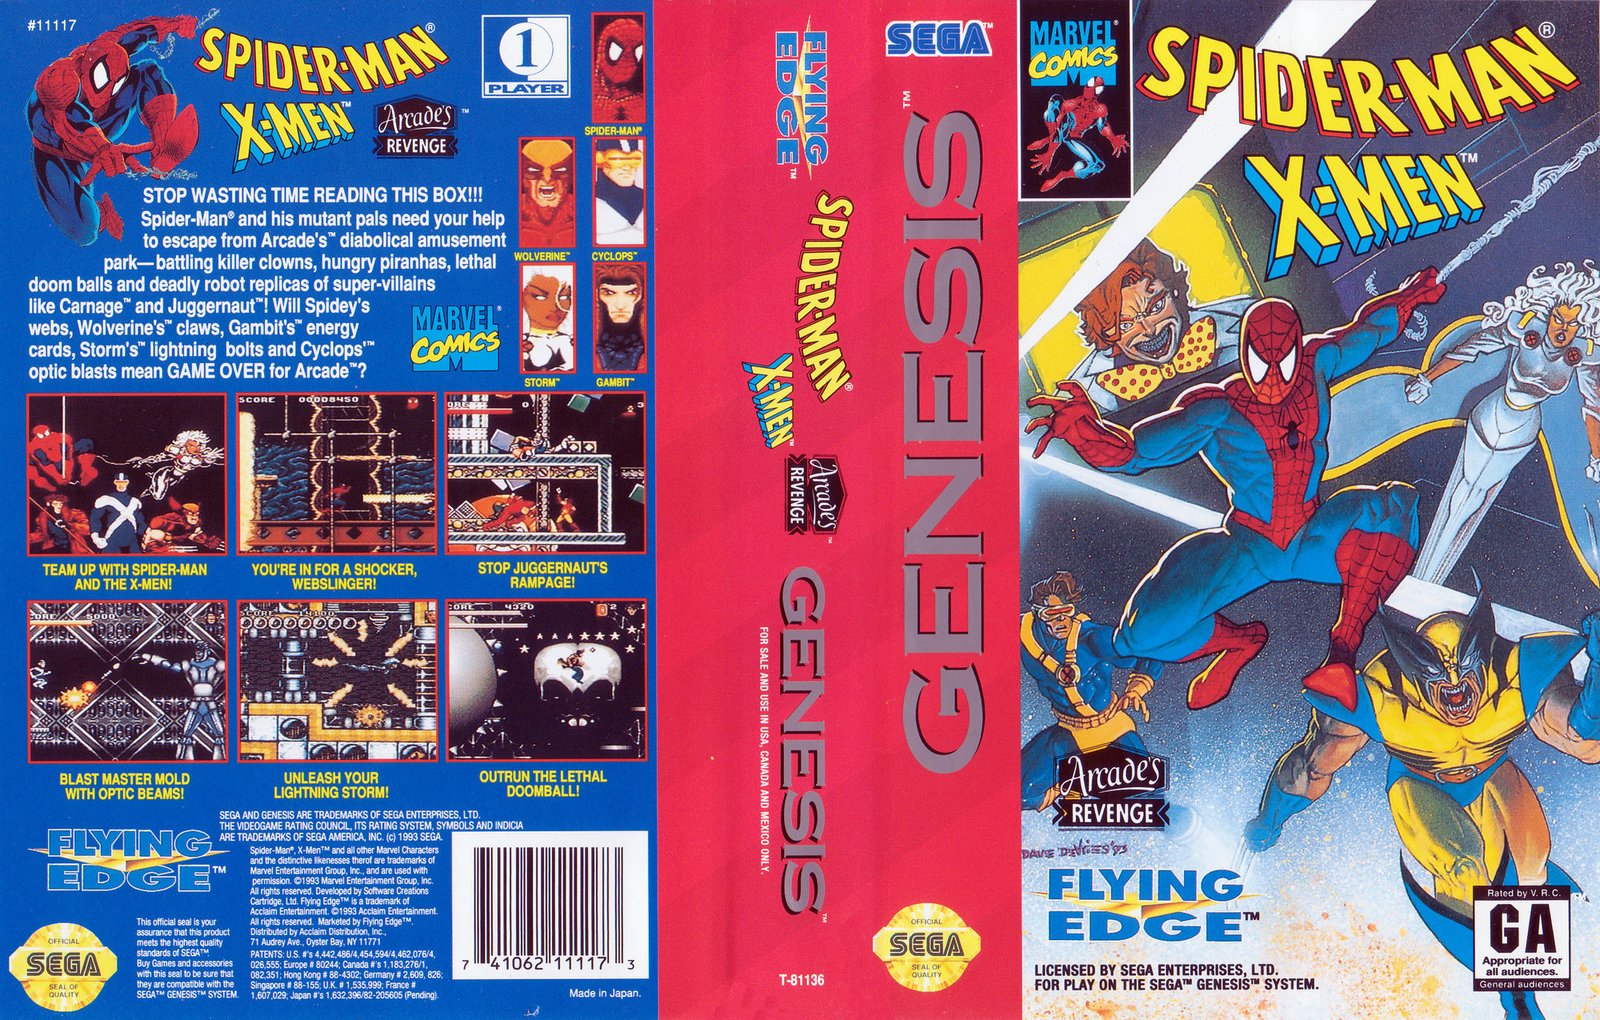 Sega обложка Spider-man x men. Spider man Sega Mega Drive. Spider man and x men Sega. Sega Spider man русская версия картридж.